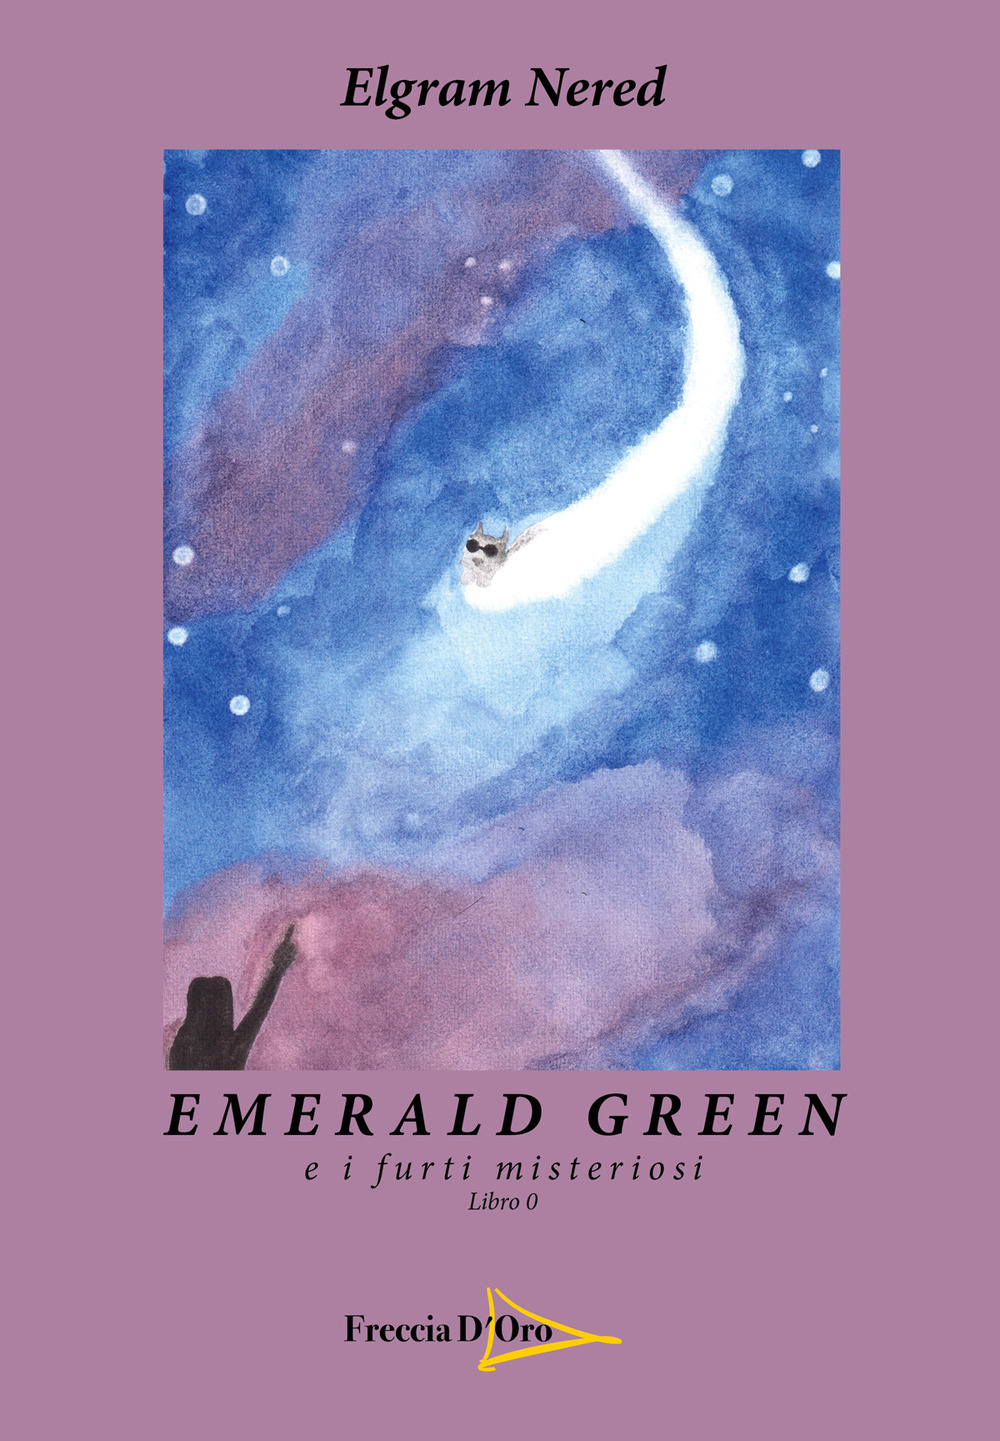 Emerald green e i furti misteriosi